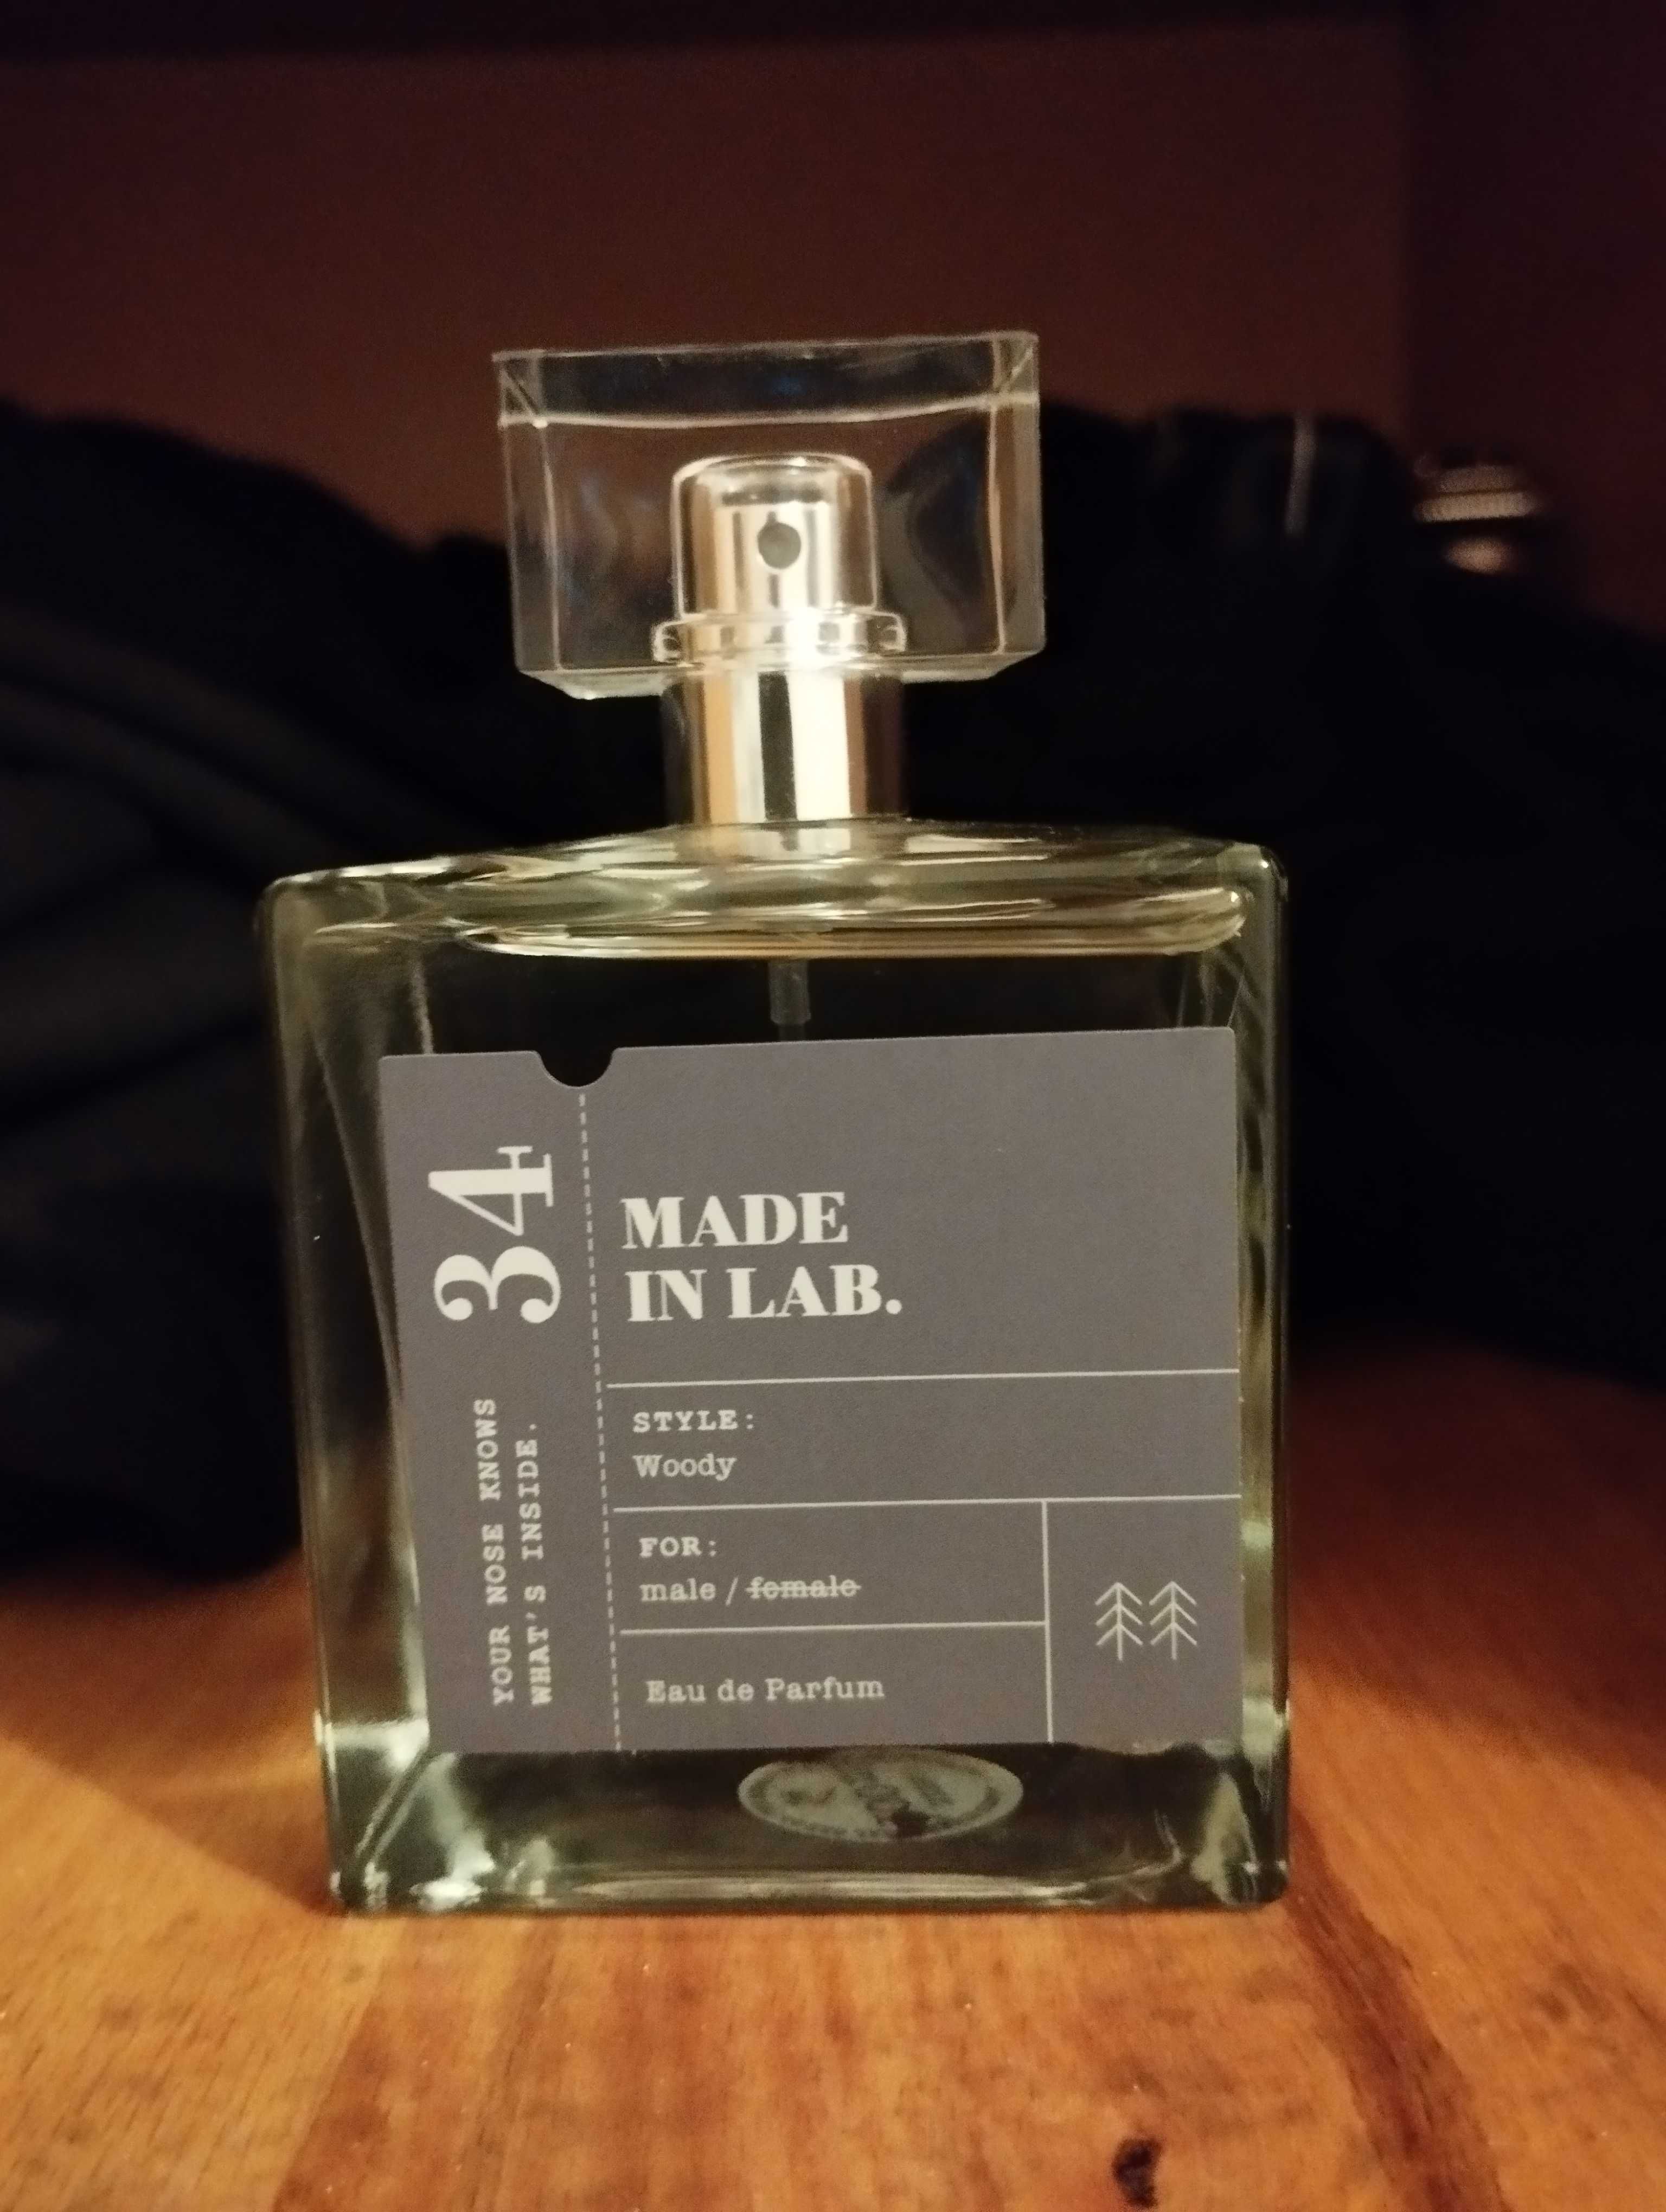 Vand parfum barbati Made in lab No. 34 100 ml